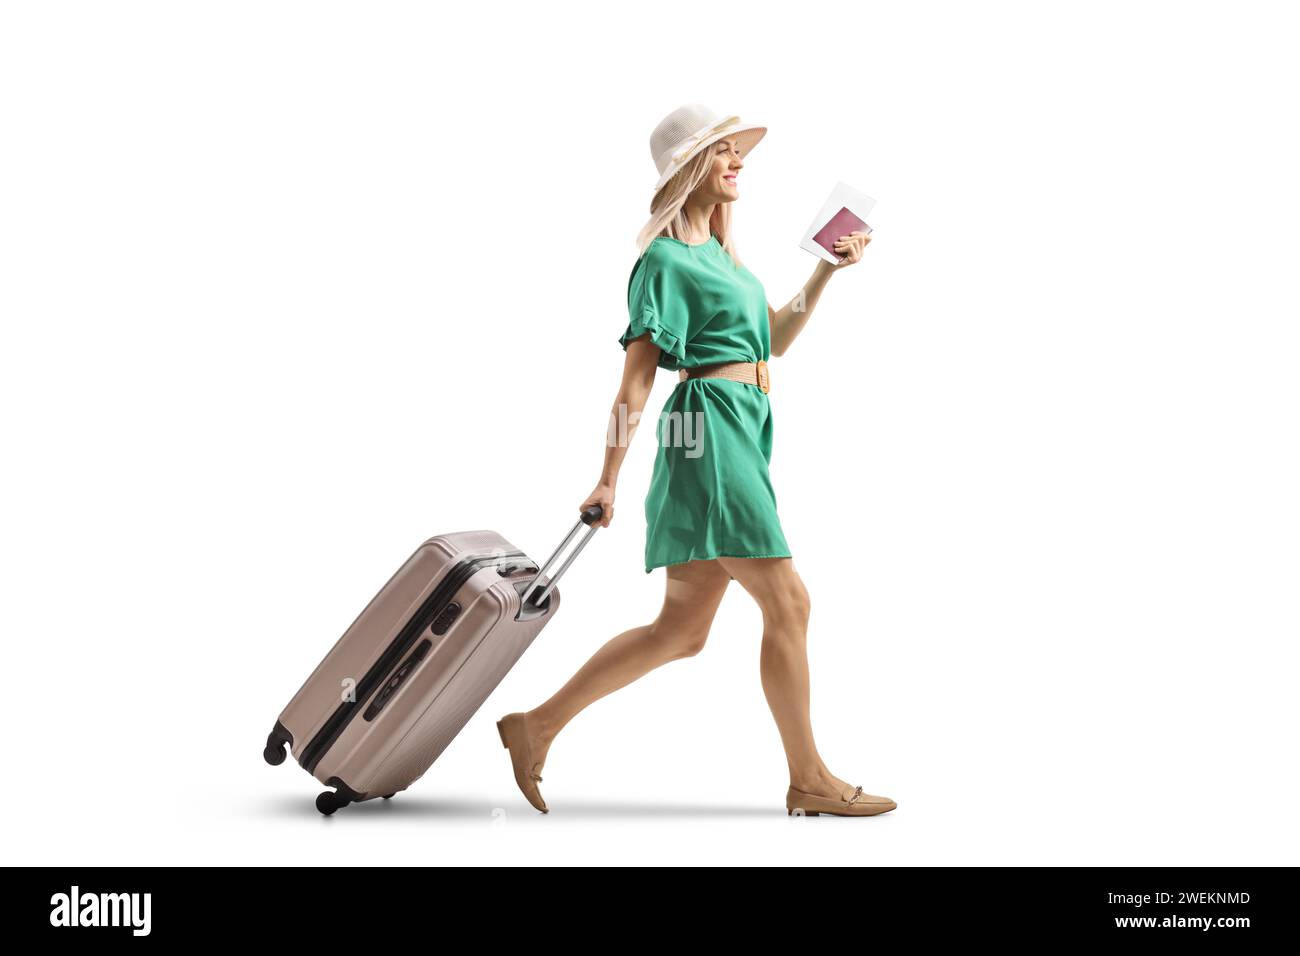 Junge Frau in einem grünen Kleid, die einen Koffer zieht und einen Pass auf weißem Hintergrund hält Stockfoto